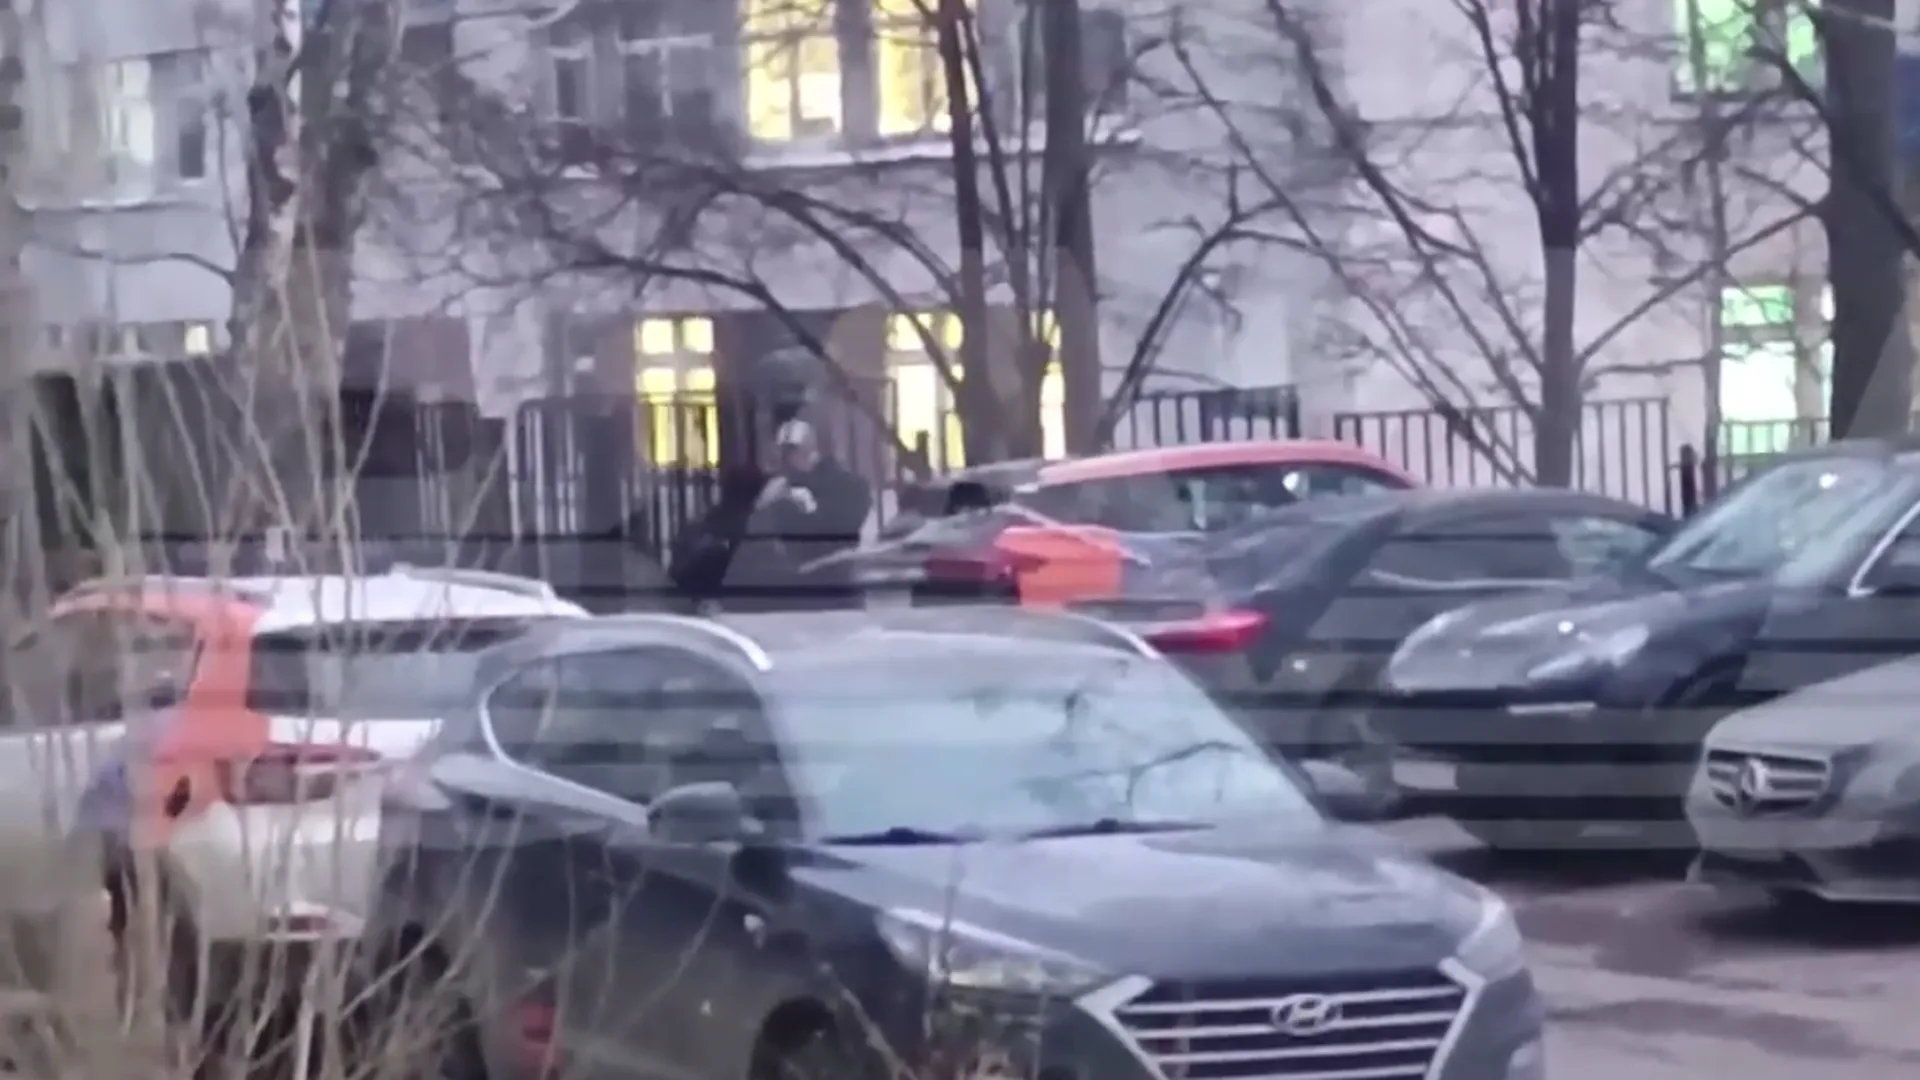 Baza: в Москве мужчина нашел гранату в каршеринговом авто